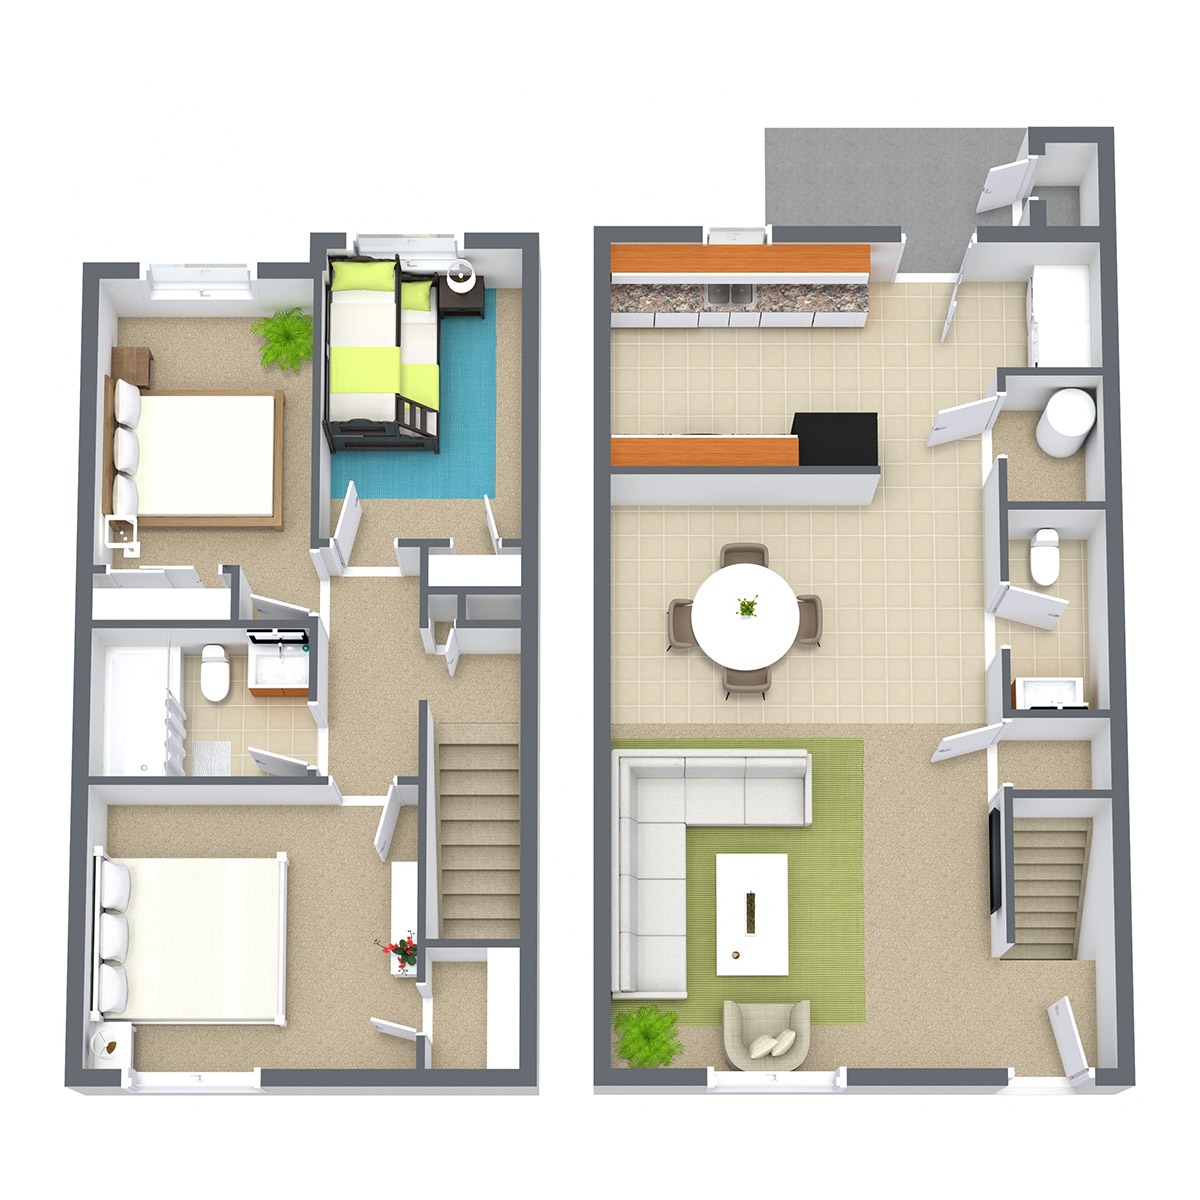 Prairie West - Floorplan - 3 Bedroom Townhome | Classic